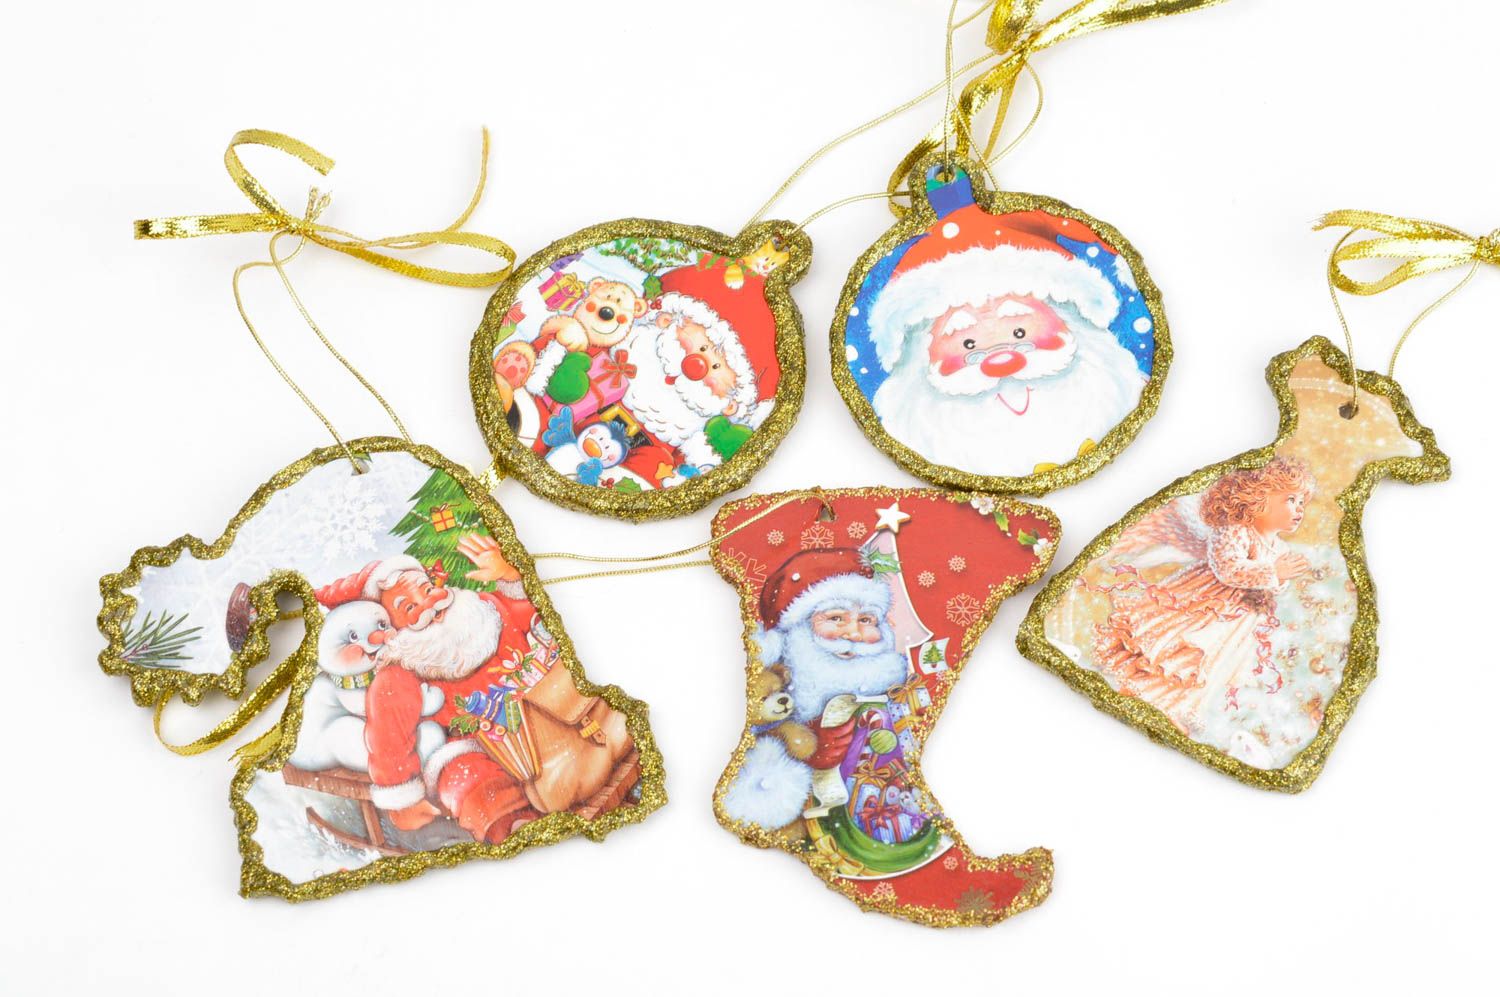 Decoraciones navideñas artesanales 5 colgantes decorativos regalos originales foto 2